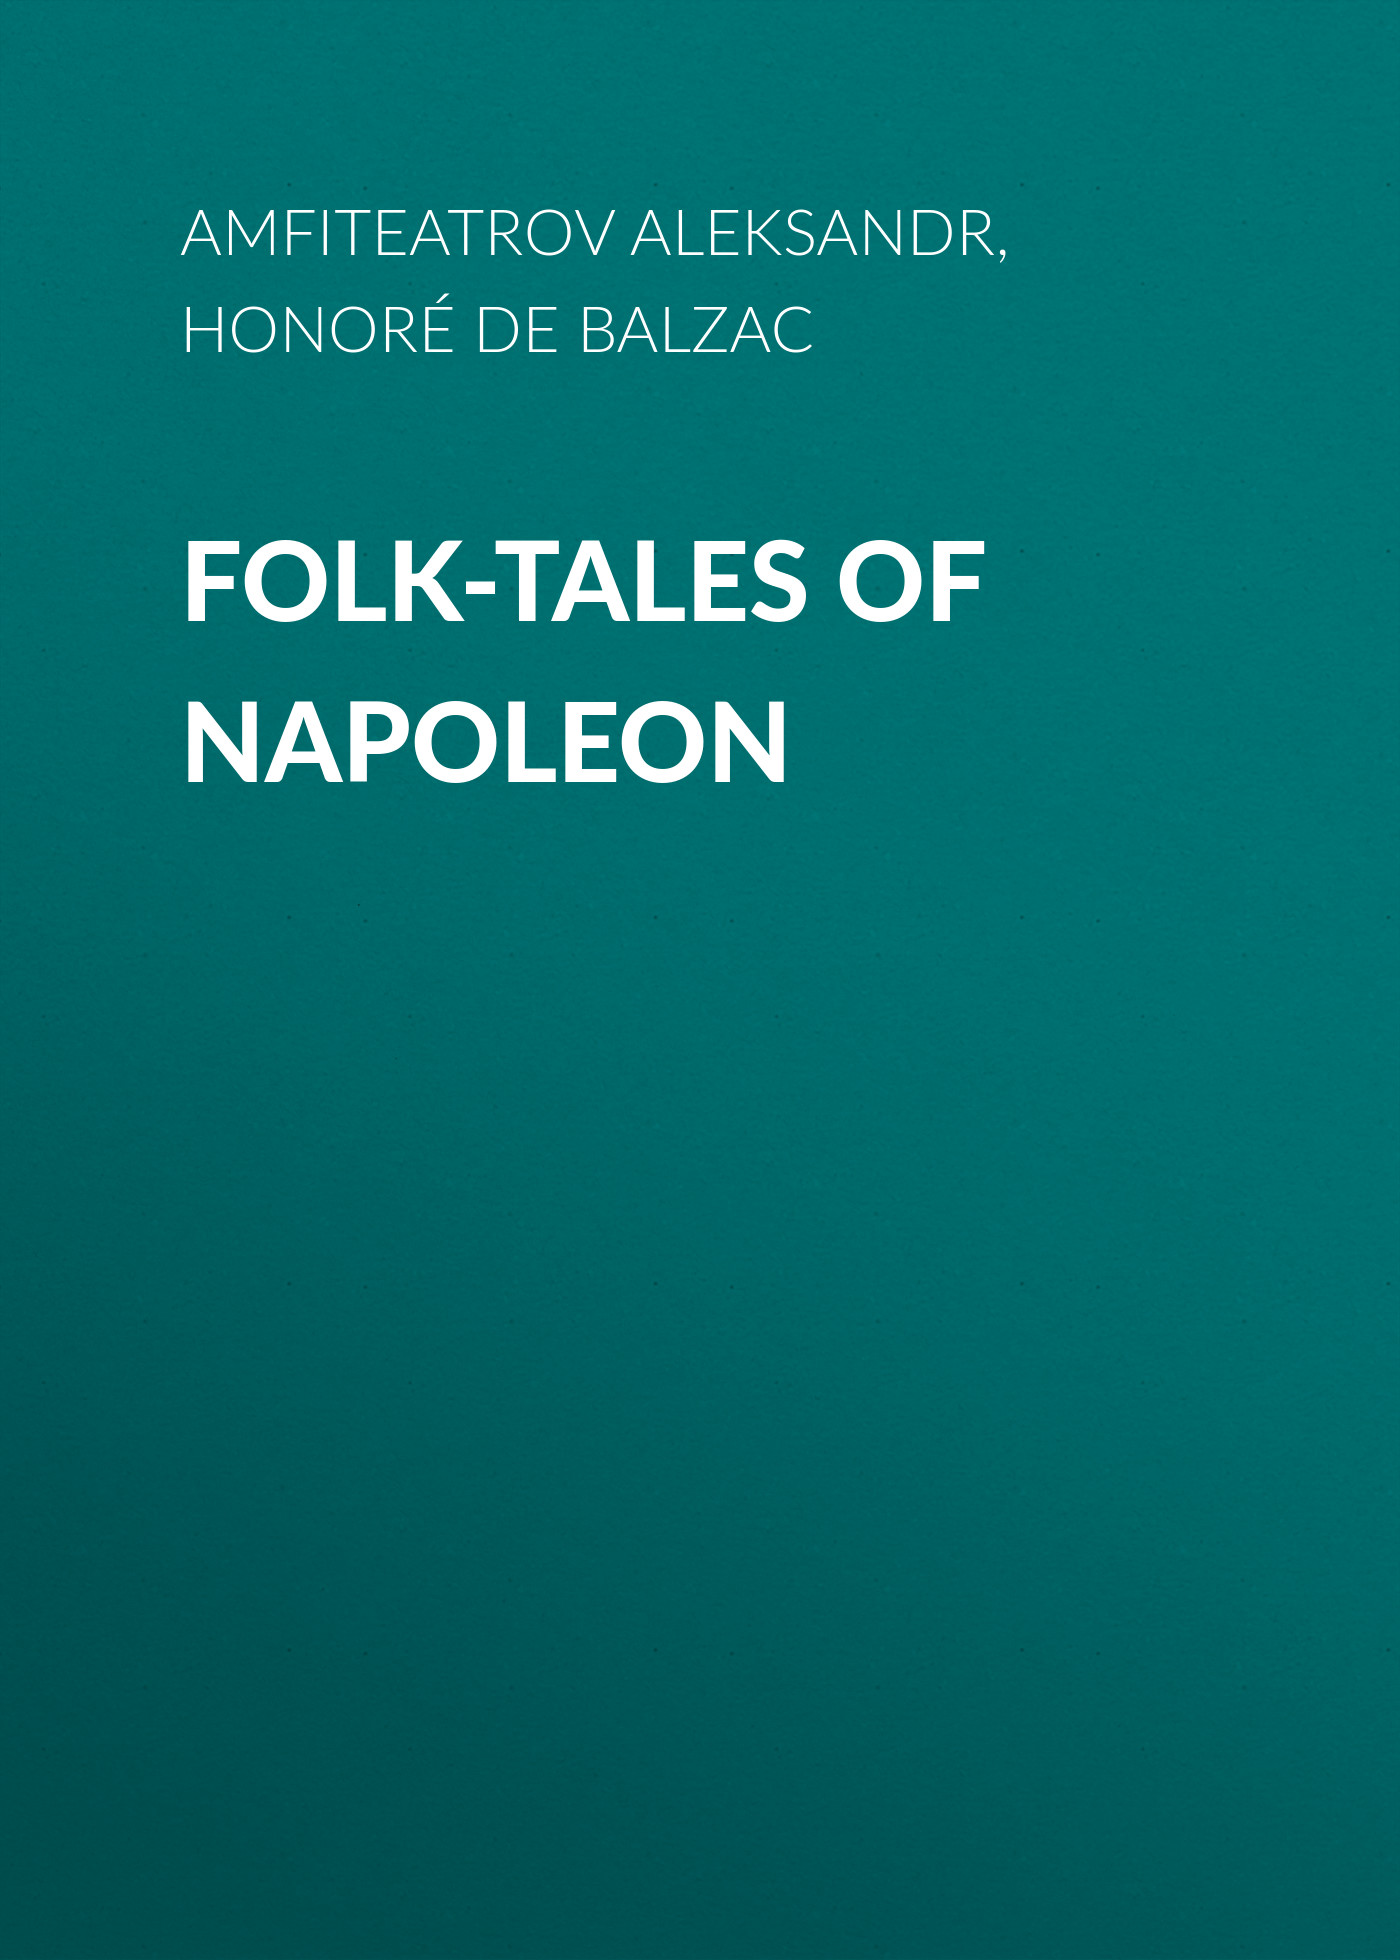 Книга Folk-Tales of Napoleon из серии , созданная Aleksandr Amfiteatrov, Honoré Balzac, может относится к жанру Литература 19 века, Зарубежная старинная литература, Зарубежная классика. Стоимость электронной книги Folk-Tales of Napoleon с идентификатором 25020131 составляет 0 руб.